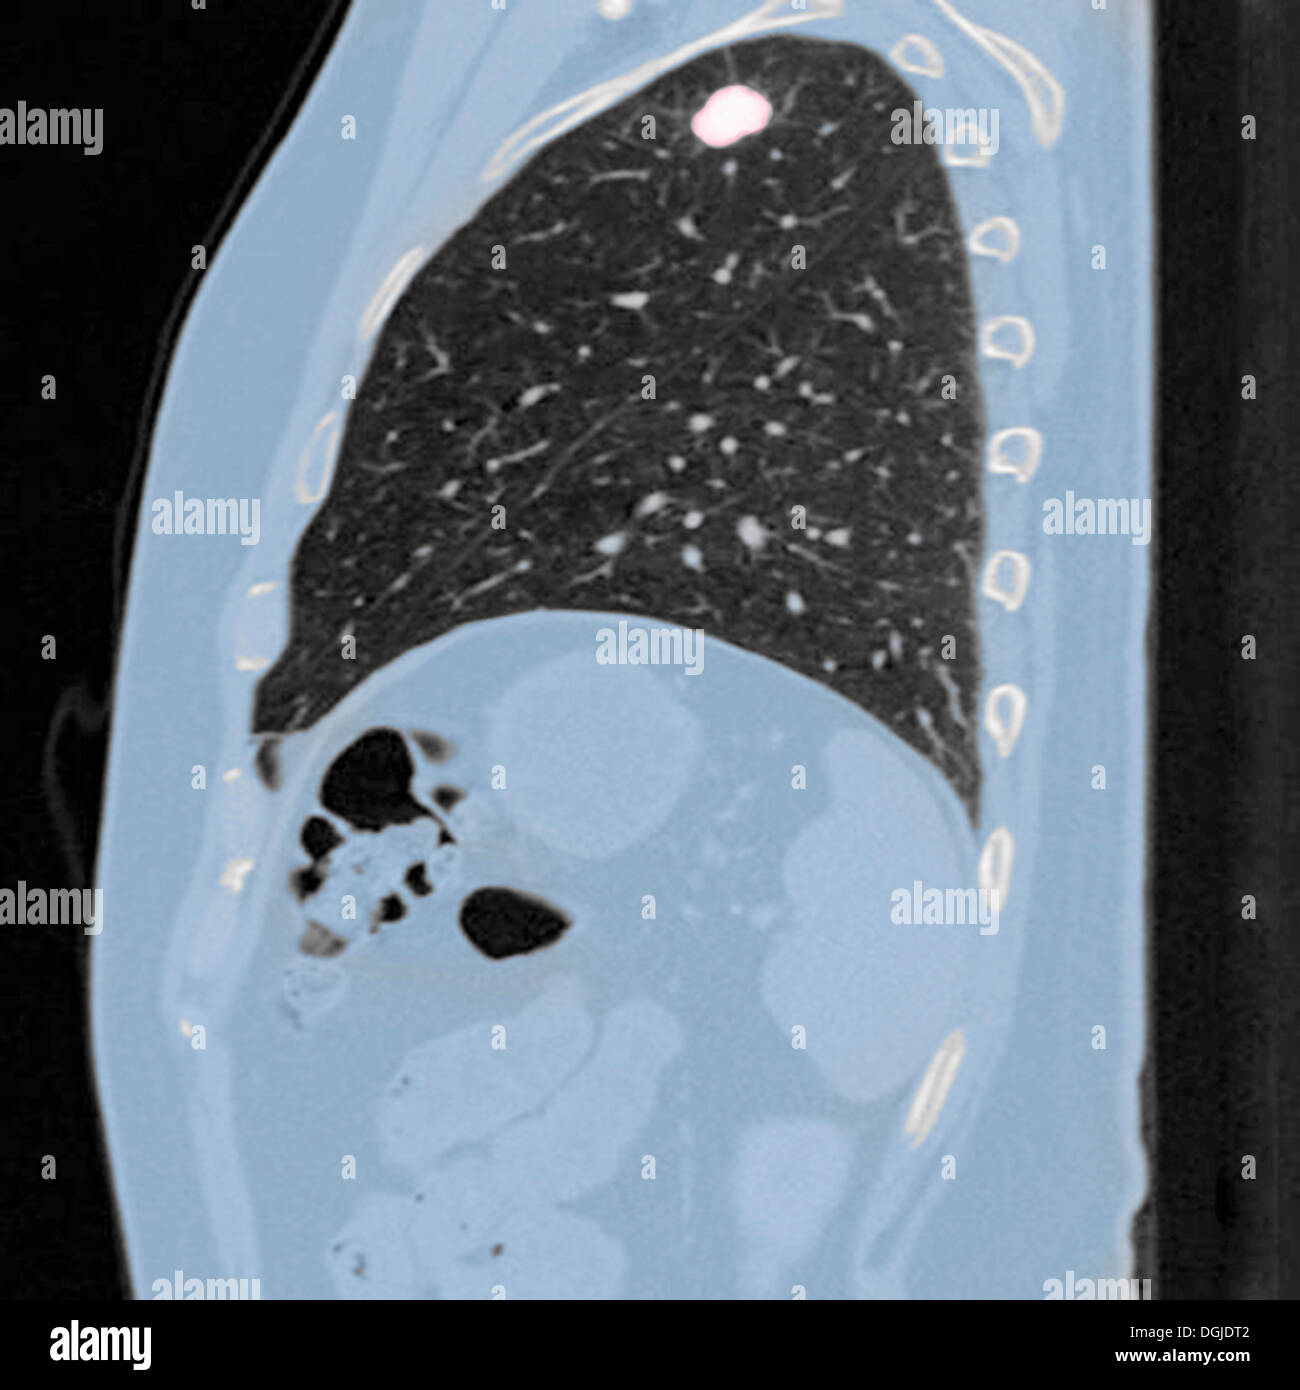 Brust-CT-Untersuchung (Röntgen-Computertomographie) eines 54 Jahre alten männlichen Patienten. Tumor in der linken Oberlappens seiner Lunge zu sehen Stockfoto